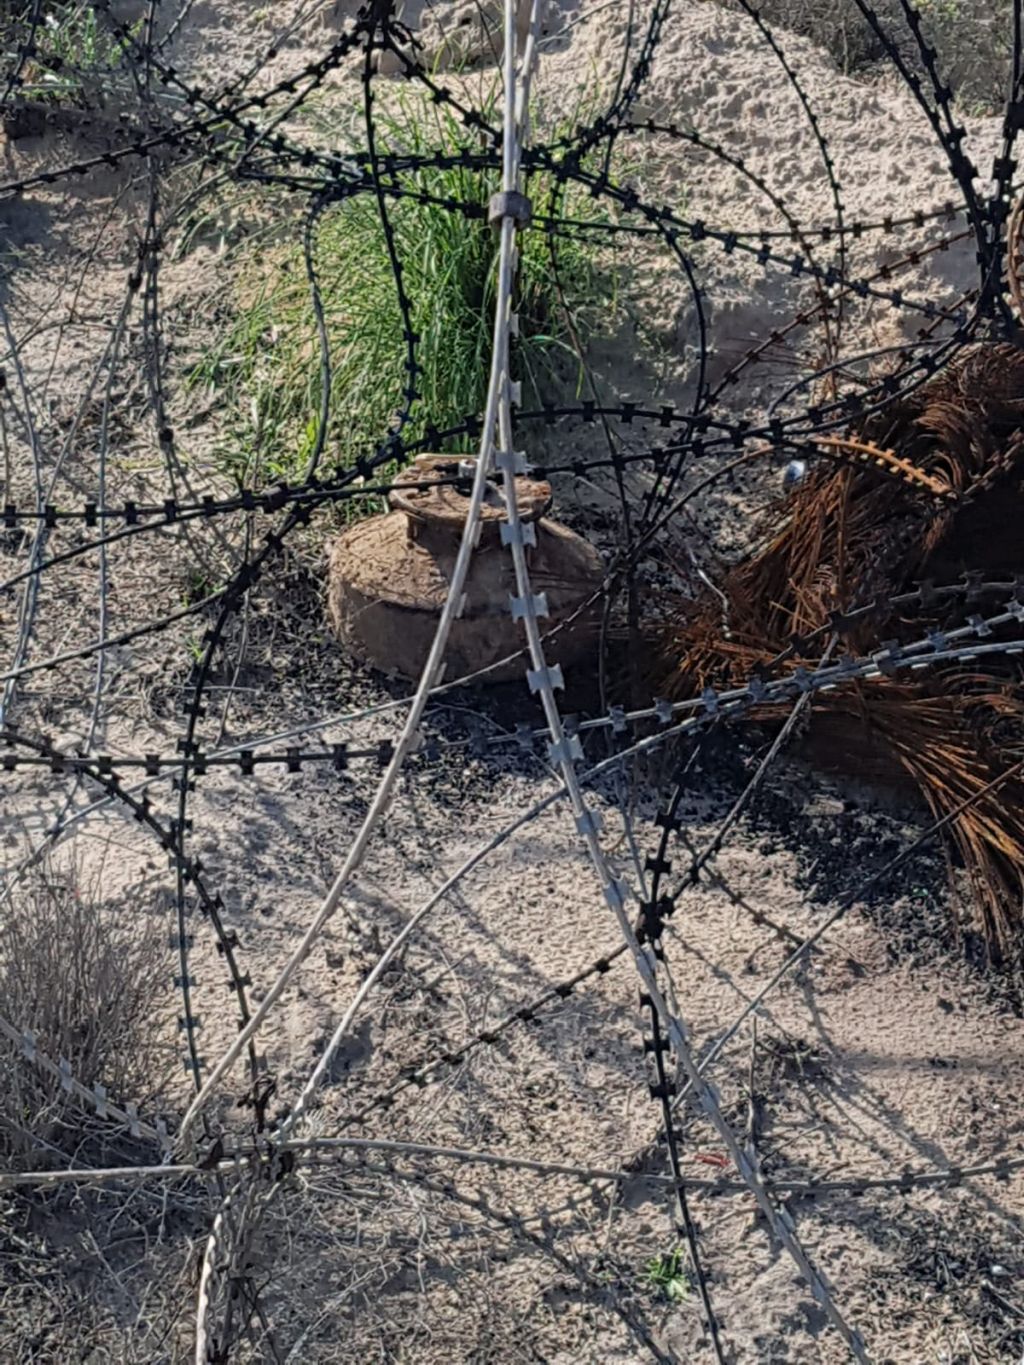 Carga explosiva dejada a un lado de la cerca